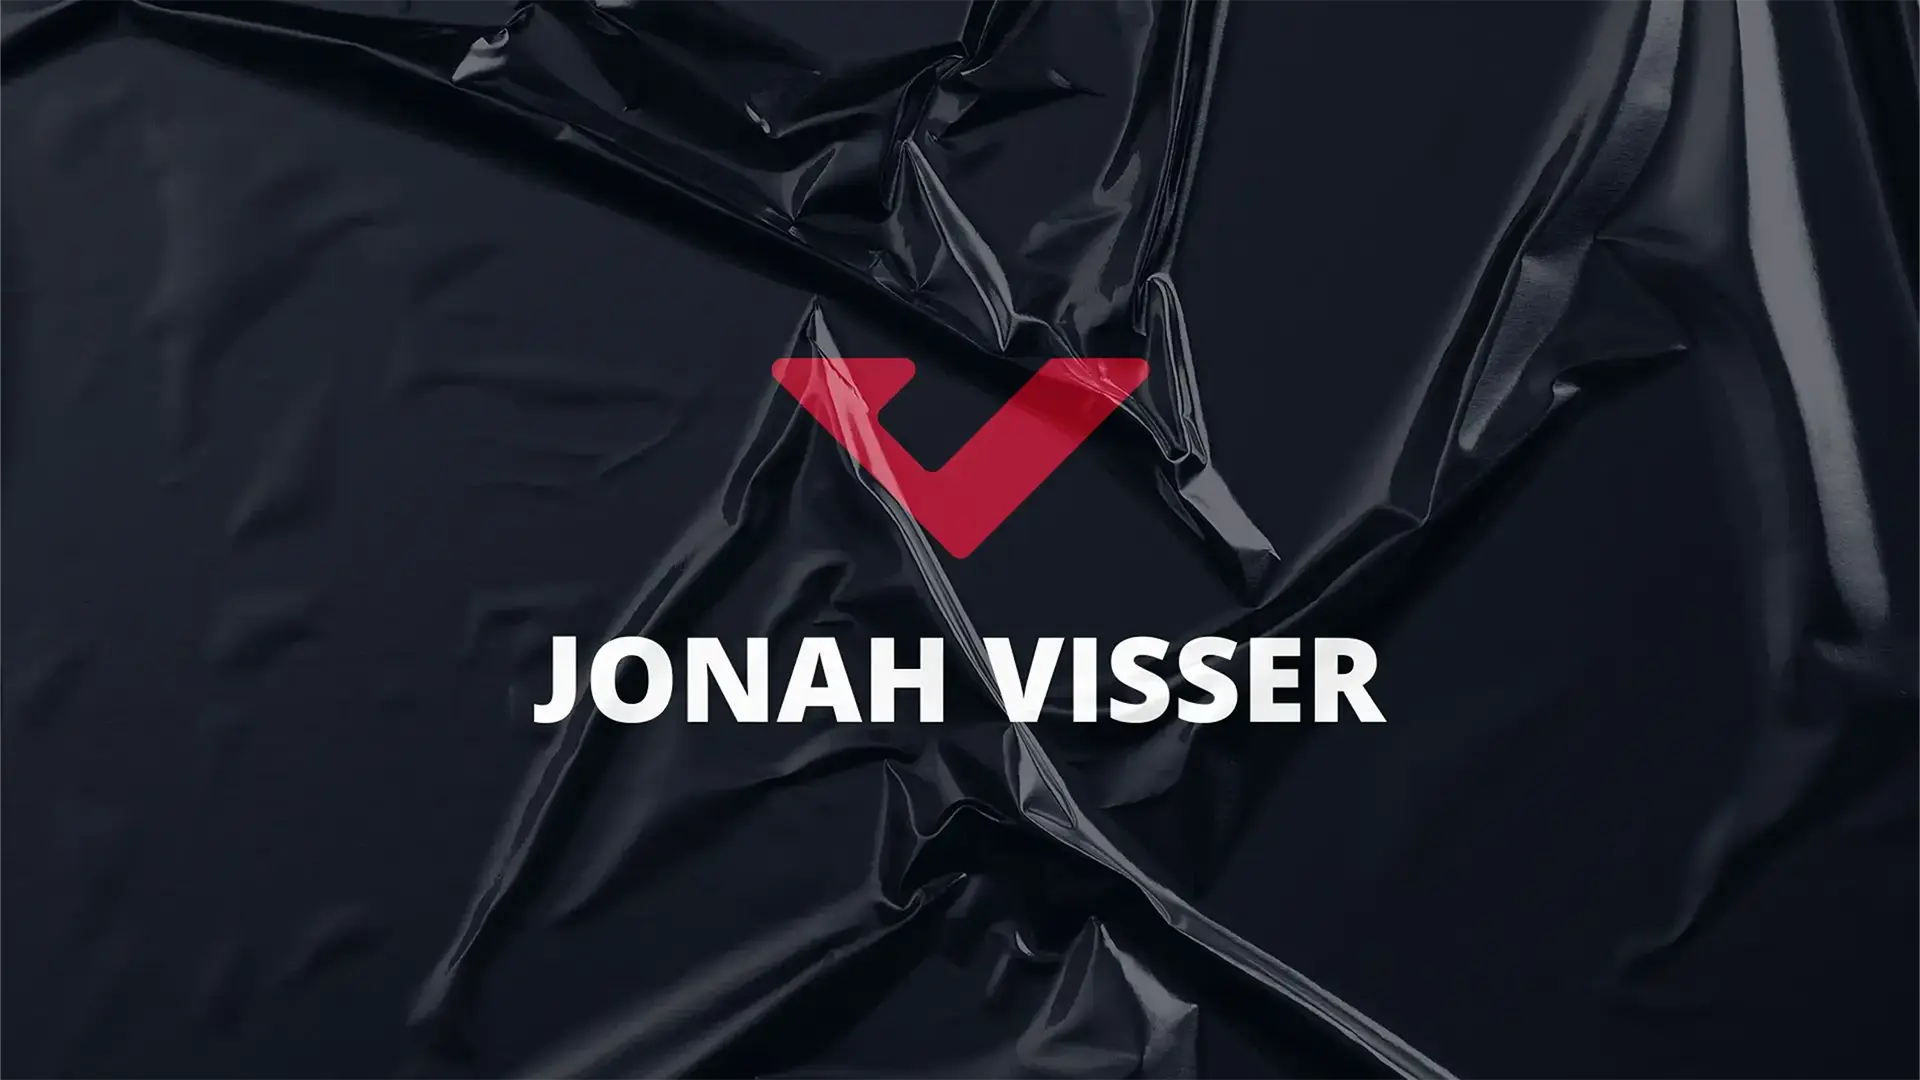 Projeto de Identidade Visual do Jonah Visser